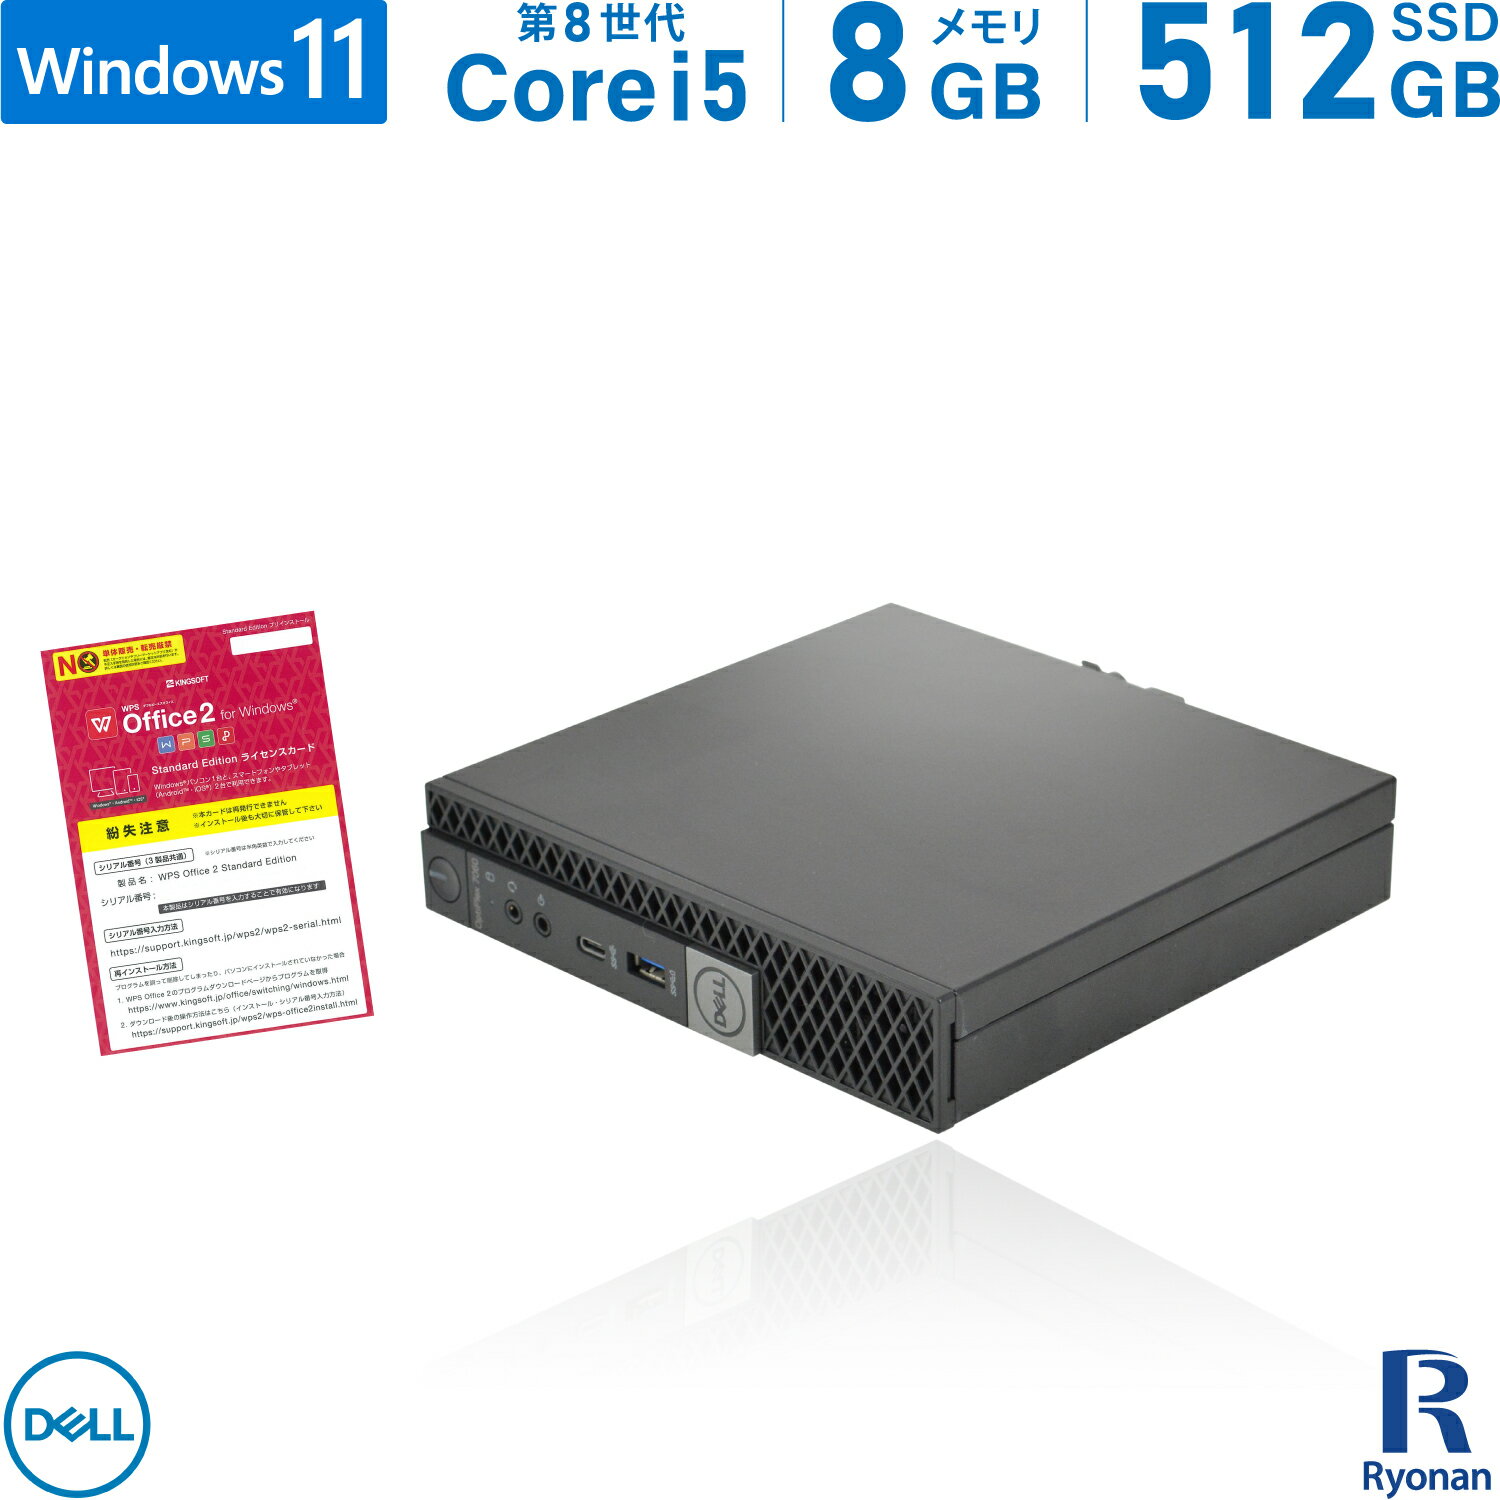 【スーパーSALE 10 OFF】DELL OptiPlex 7060 micro 第8世代 Core i5 メモリ:8GB 新品SSD:512GB デスクトップパソコン USB 3.0 Type-C Office付 パソコン デスクトップ 中古パソコン Windows 11 搭載 Windows 10 無線LAN付き ミニPC